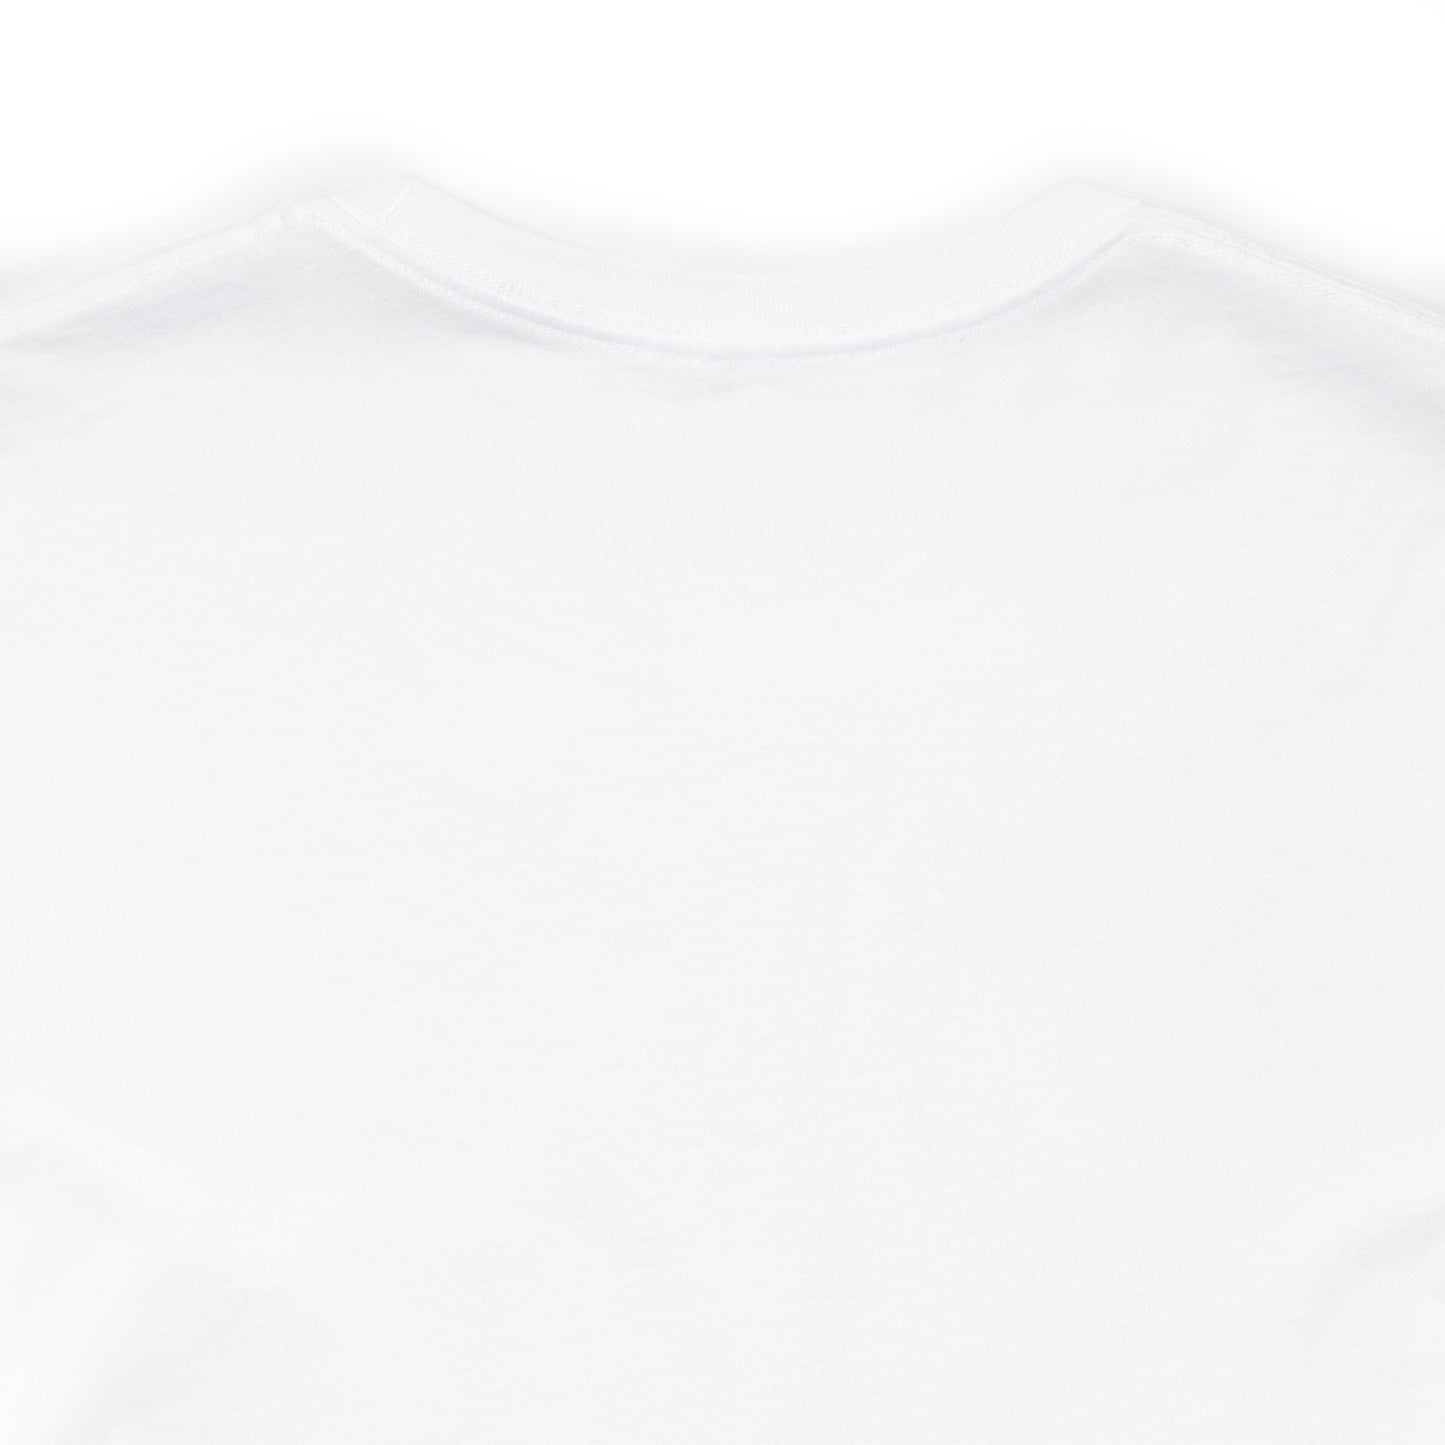 UZB Emblem Unisex T-Shirt